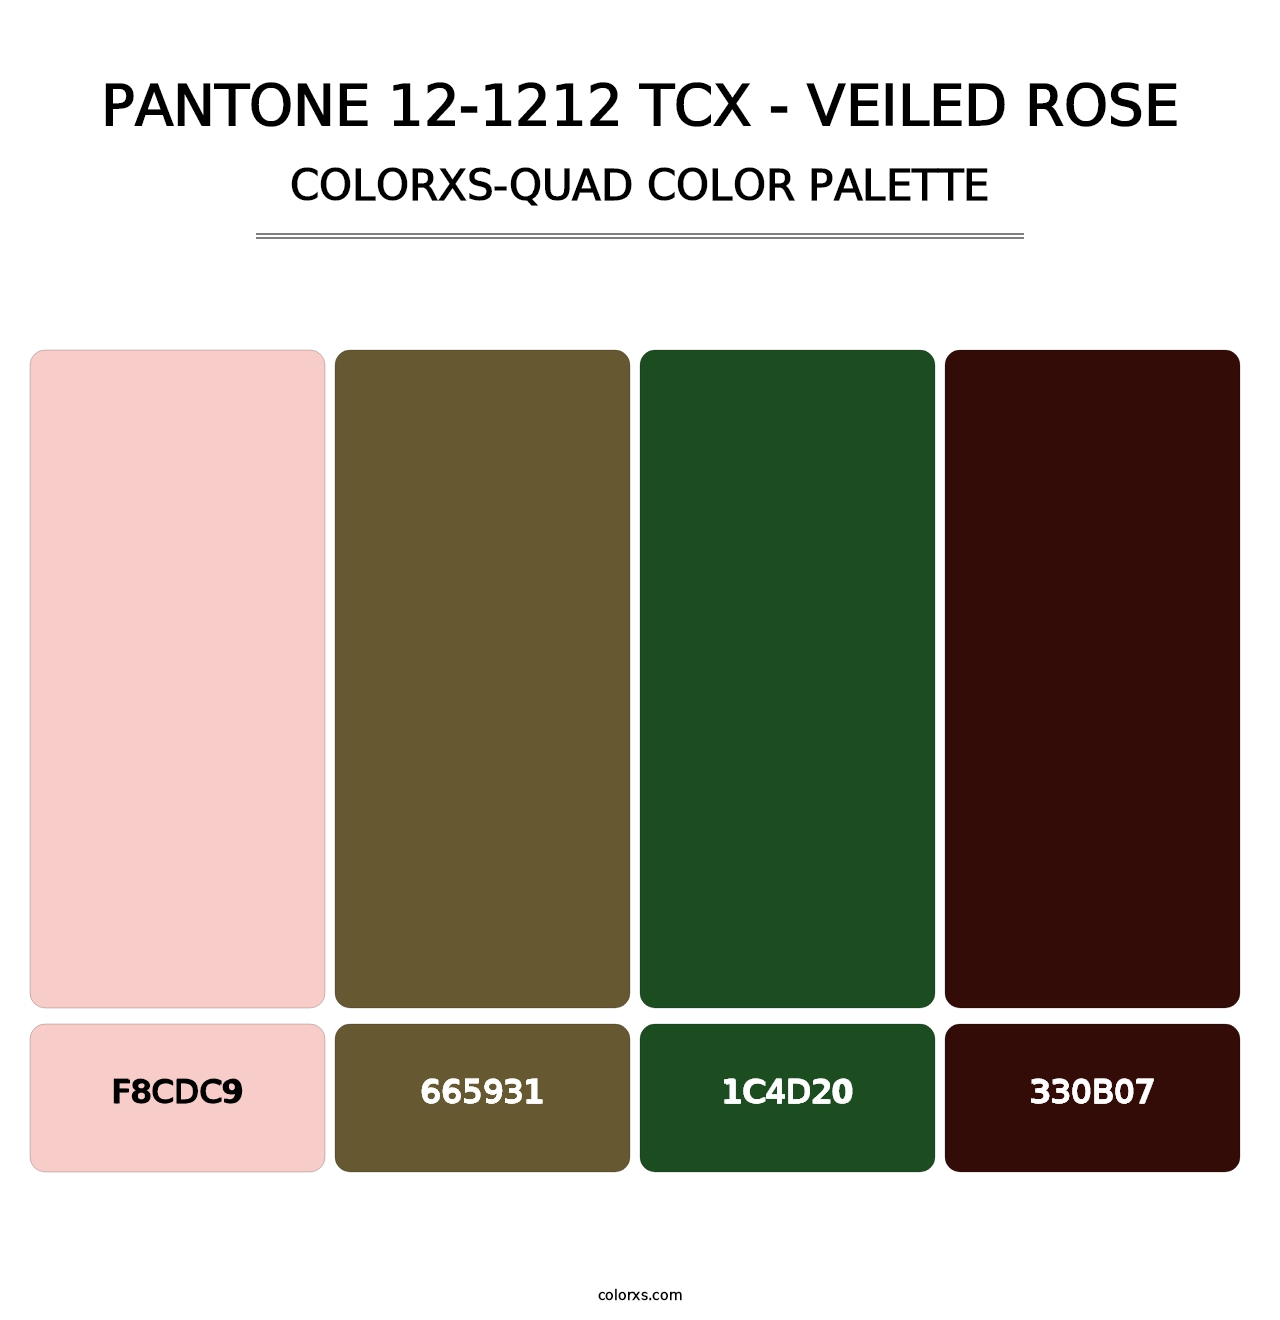 PANTONE 12-1212 TCX - Veiled Rose - Colorxs Quad Palette